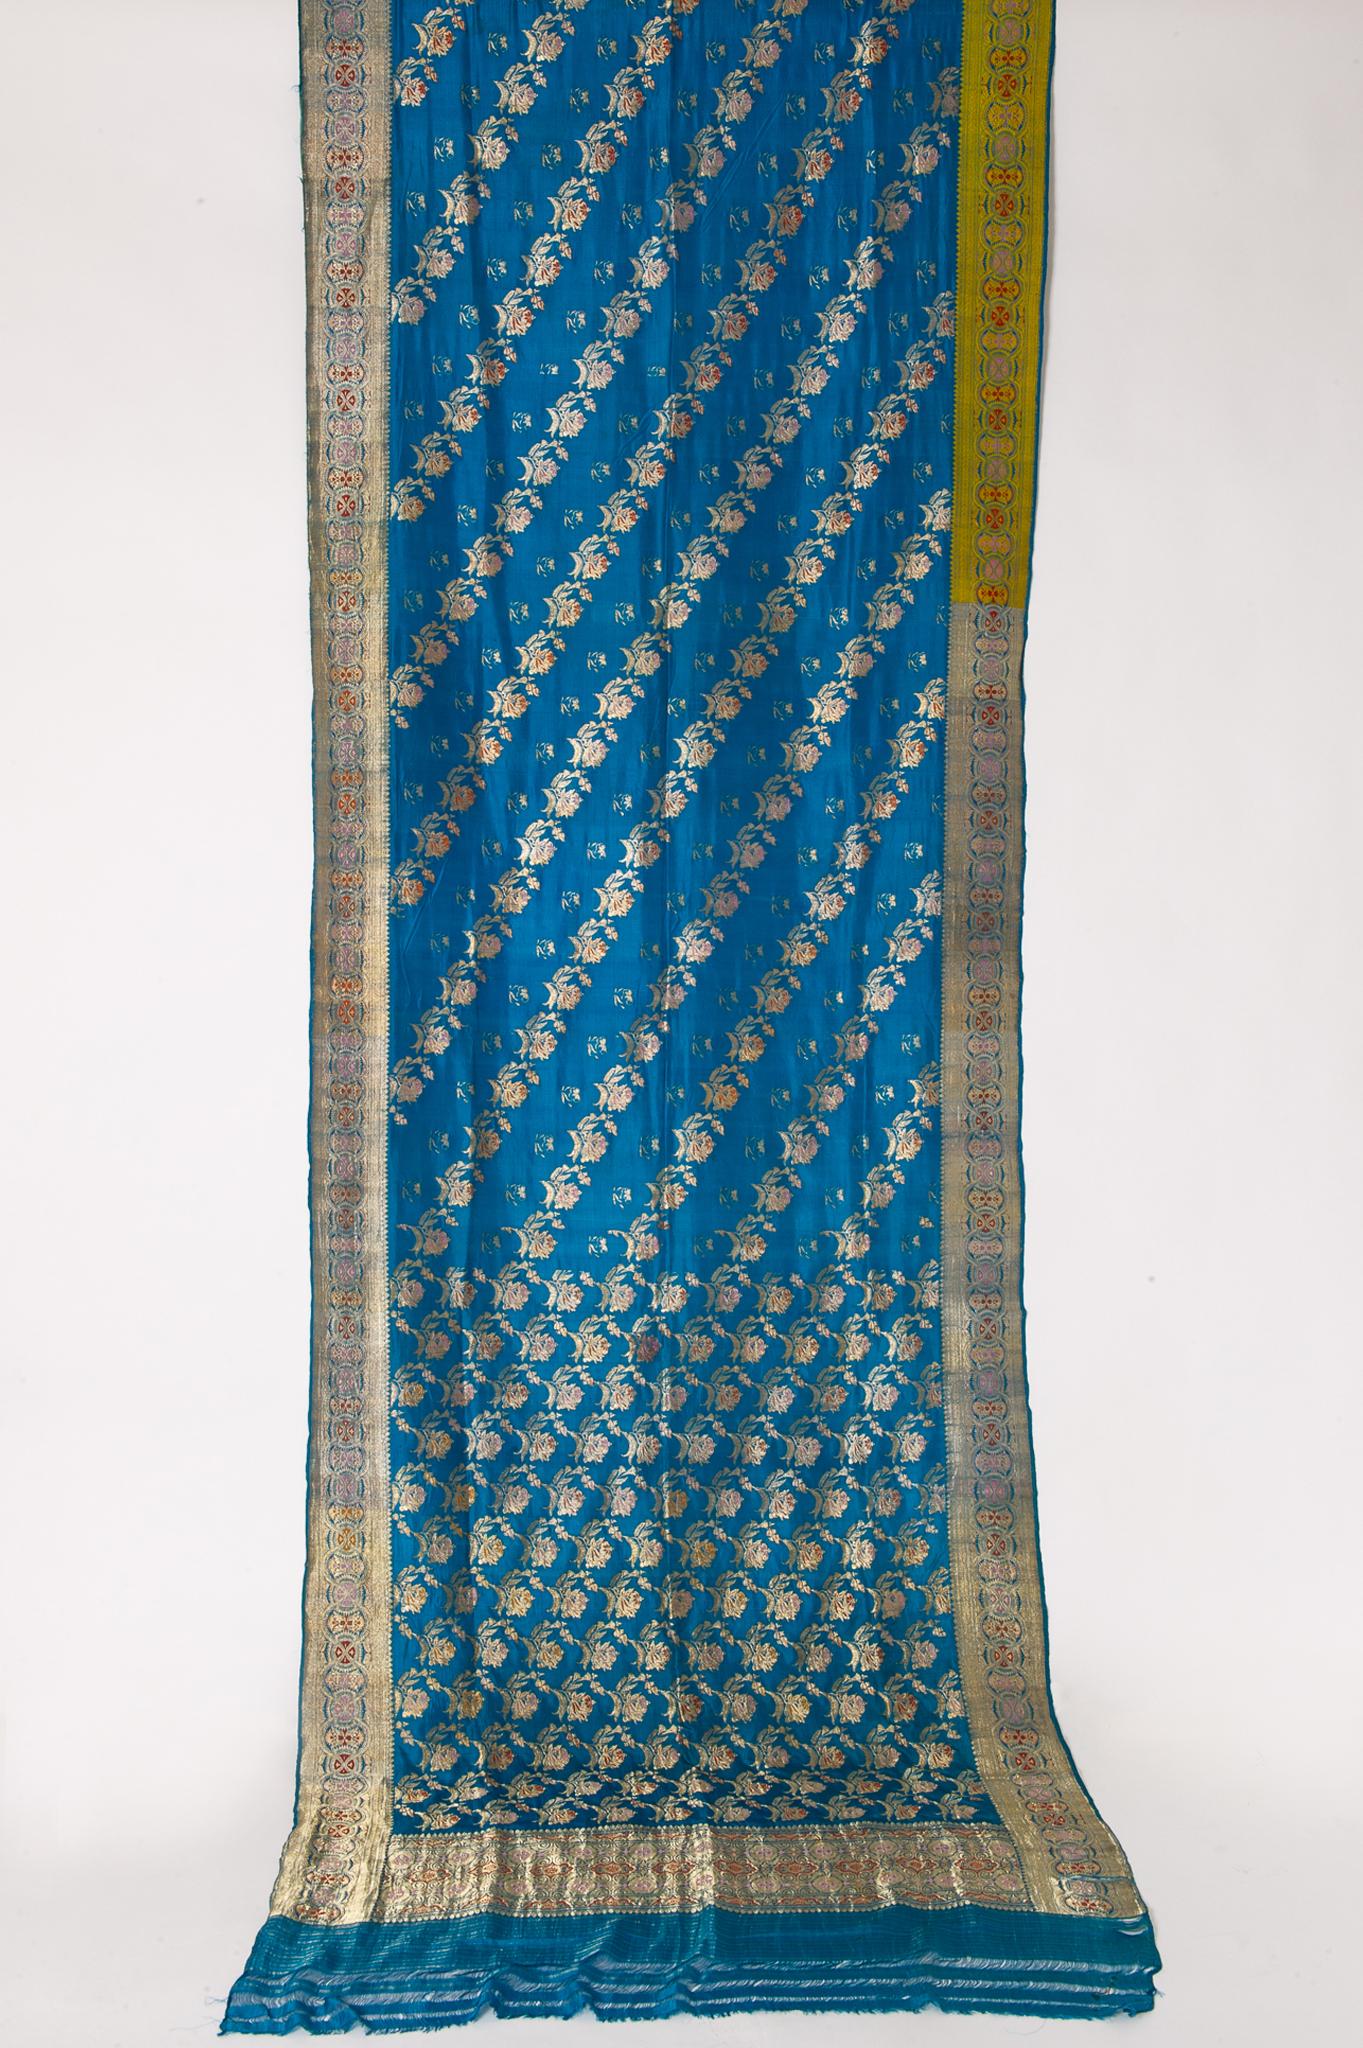 Wunderschöner türkisfarbener Sari im Vintage-Stil mit reichem Blumenmuster: eine neue Idee für ungewöhnliche Vorhänge oder ein ABENDKLEID !
Es wurde getragen, aber gewaschen. Es kann noch Flecken geben. Das Gewebe ist zwar aus Seide, aber ich